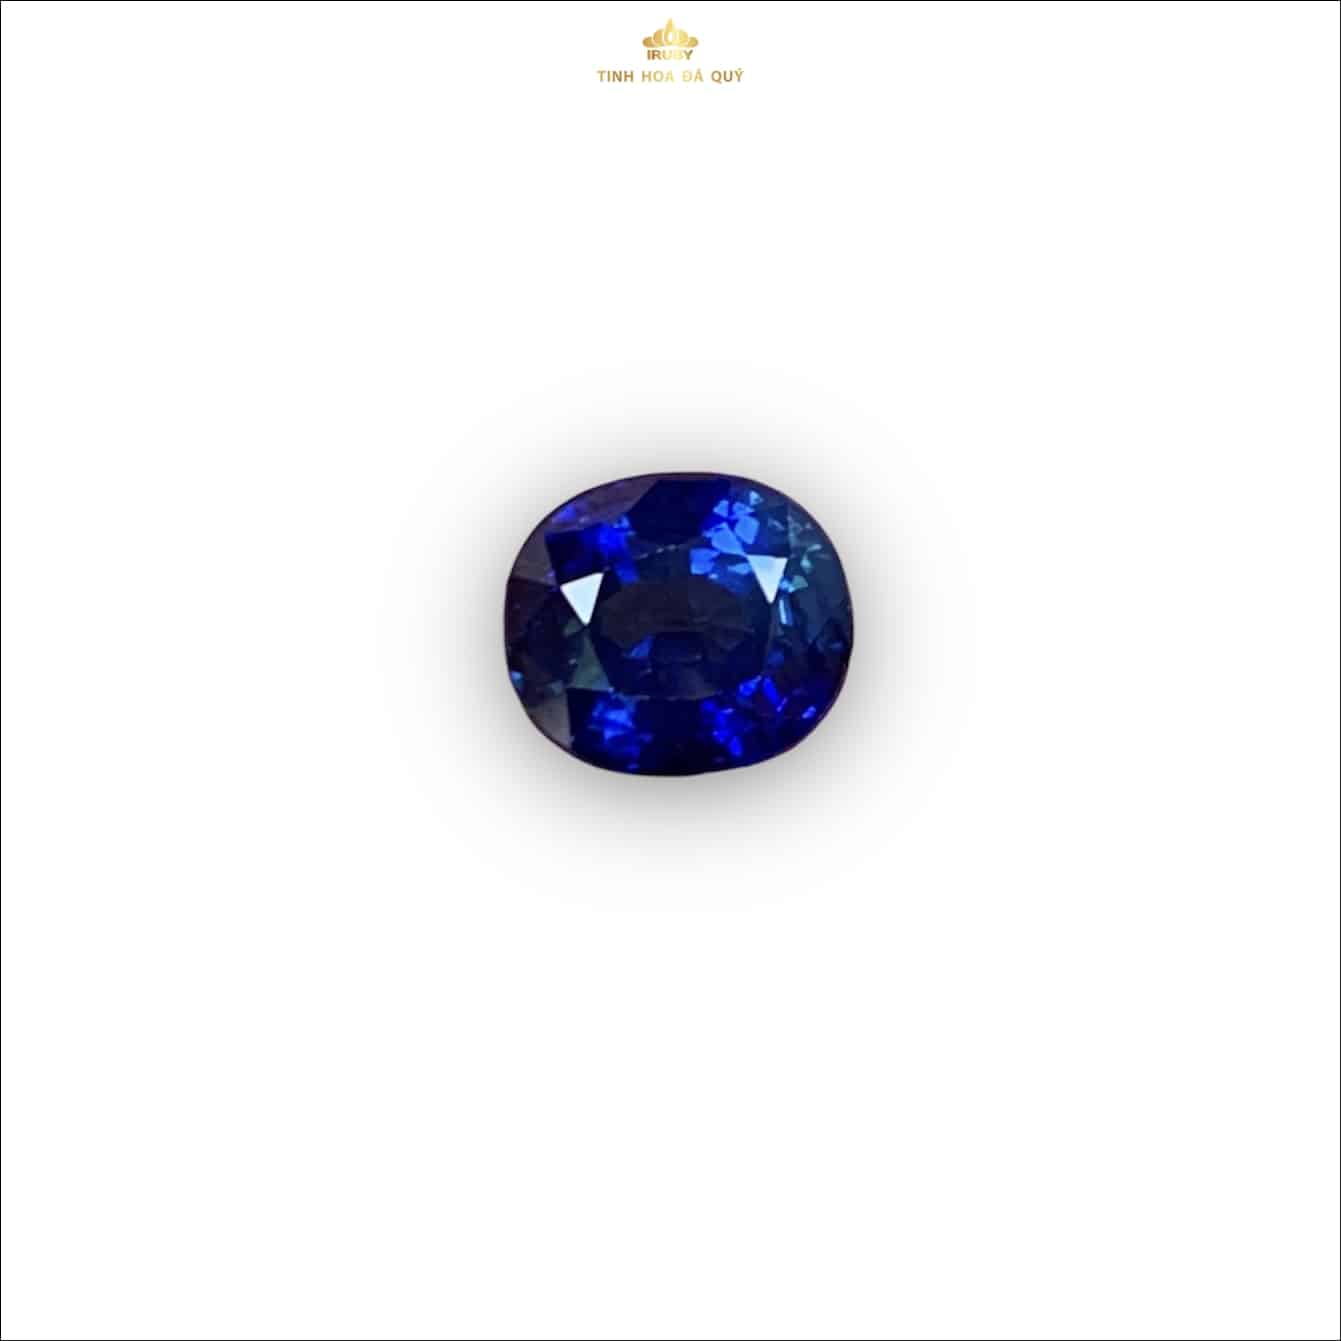 Viên Sapphire xanh lam tự nhiên nguyên bản 2,95ct – IRBS 233295